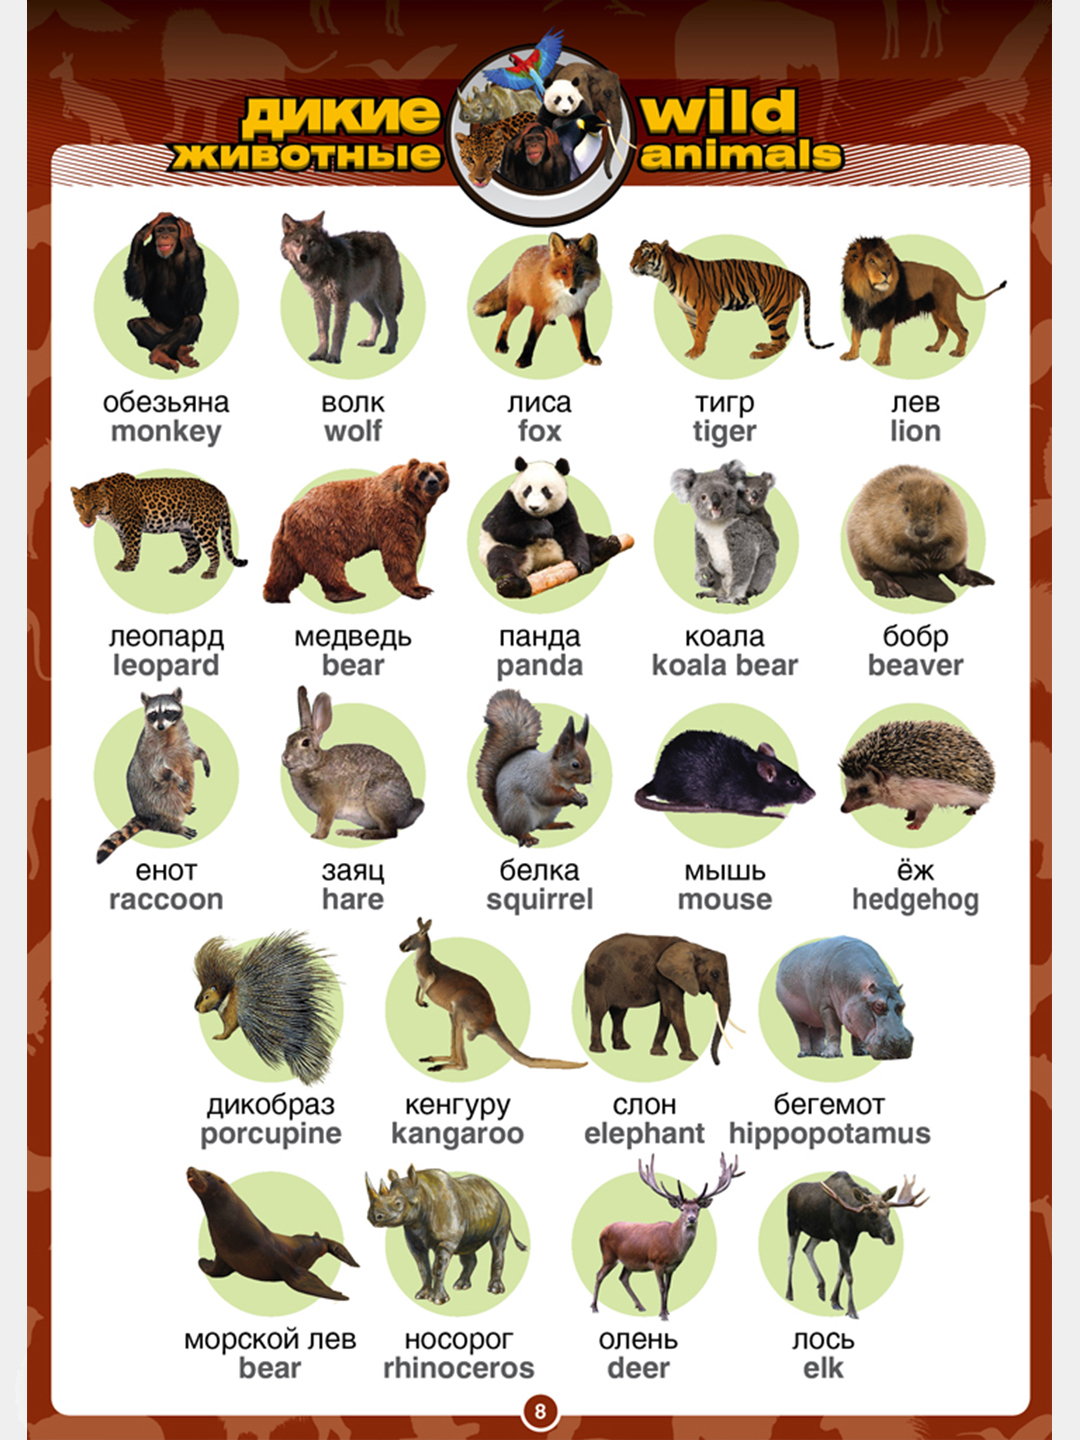 Имя animals. Животнее на английском языке. Животные названия. Животные по английскому. Названия животных на английском языке.